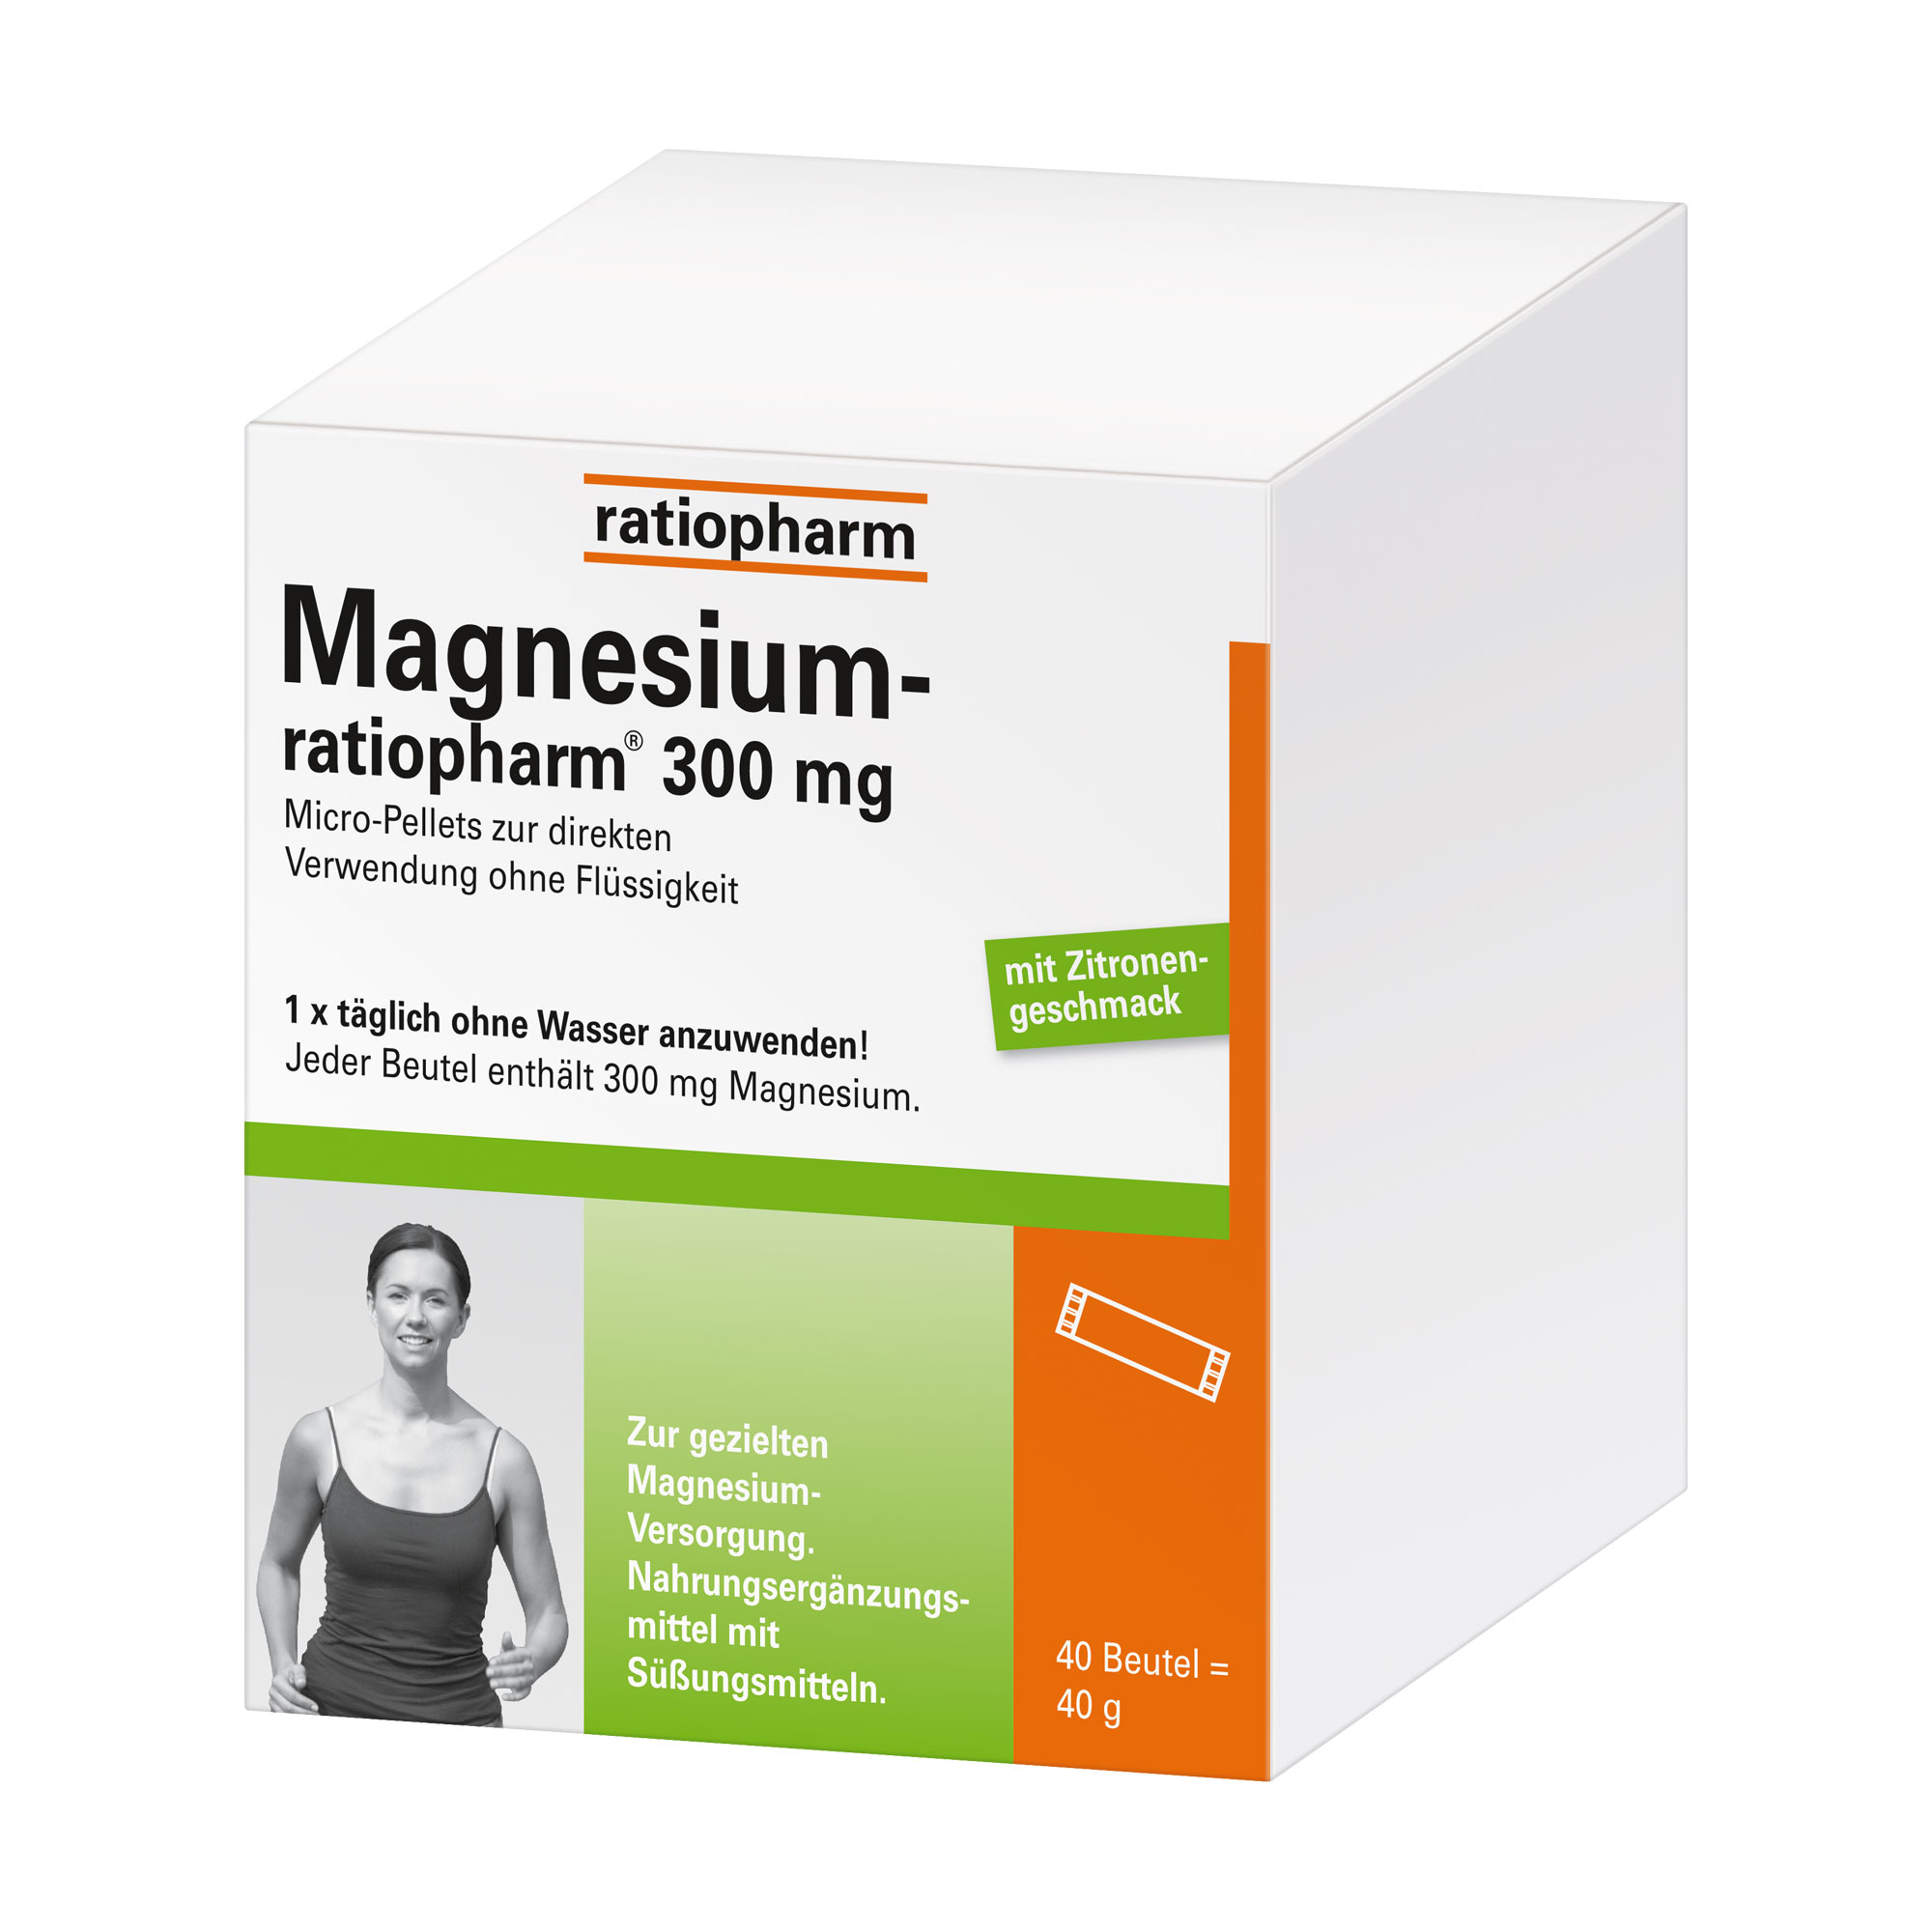 Nahrungsergänzungsmittel zur gezielten Magnesium-Versorgung.